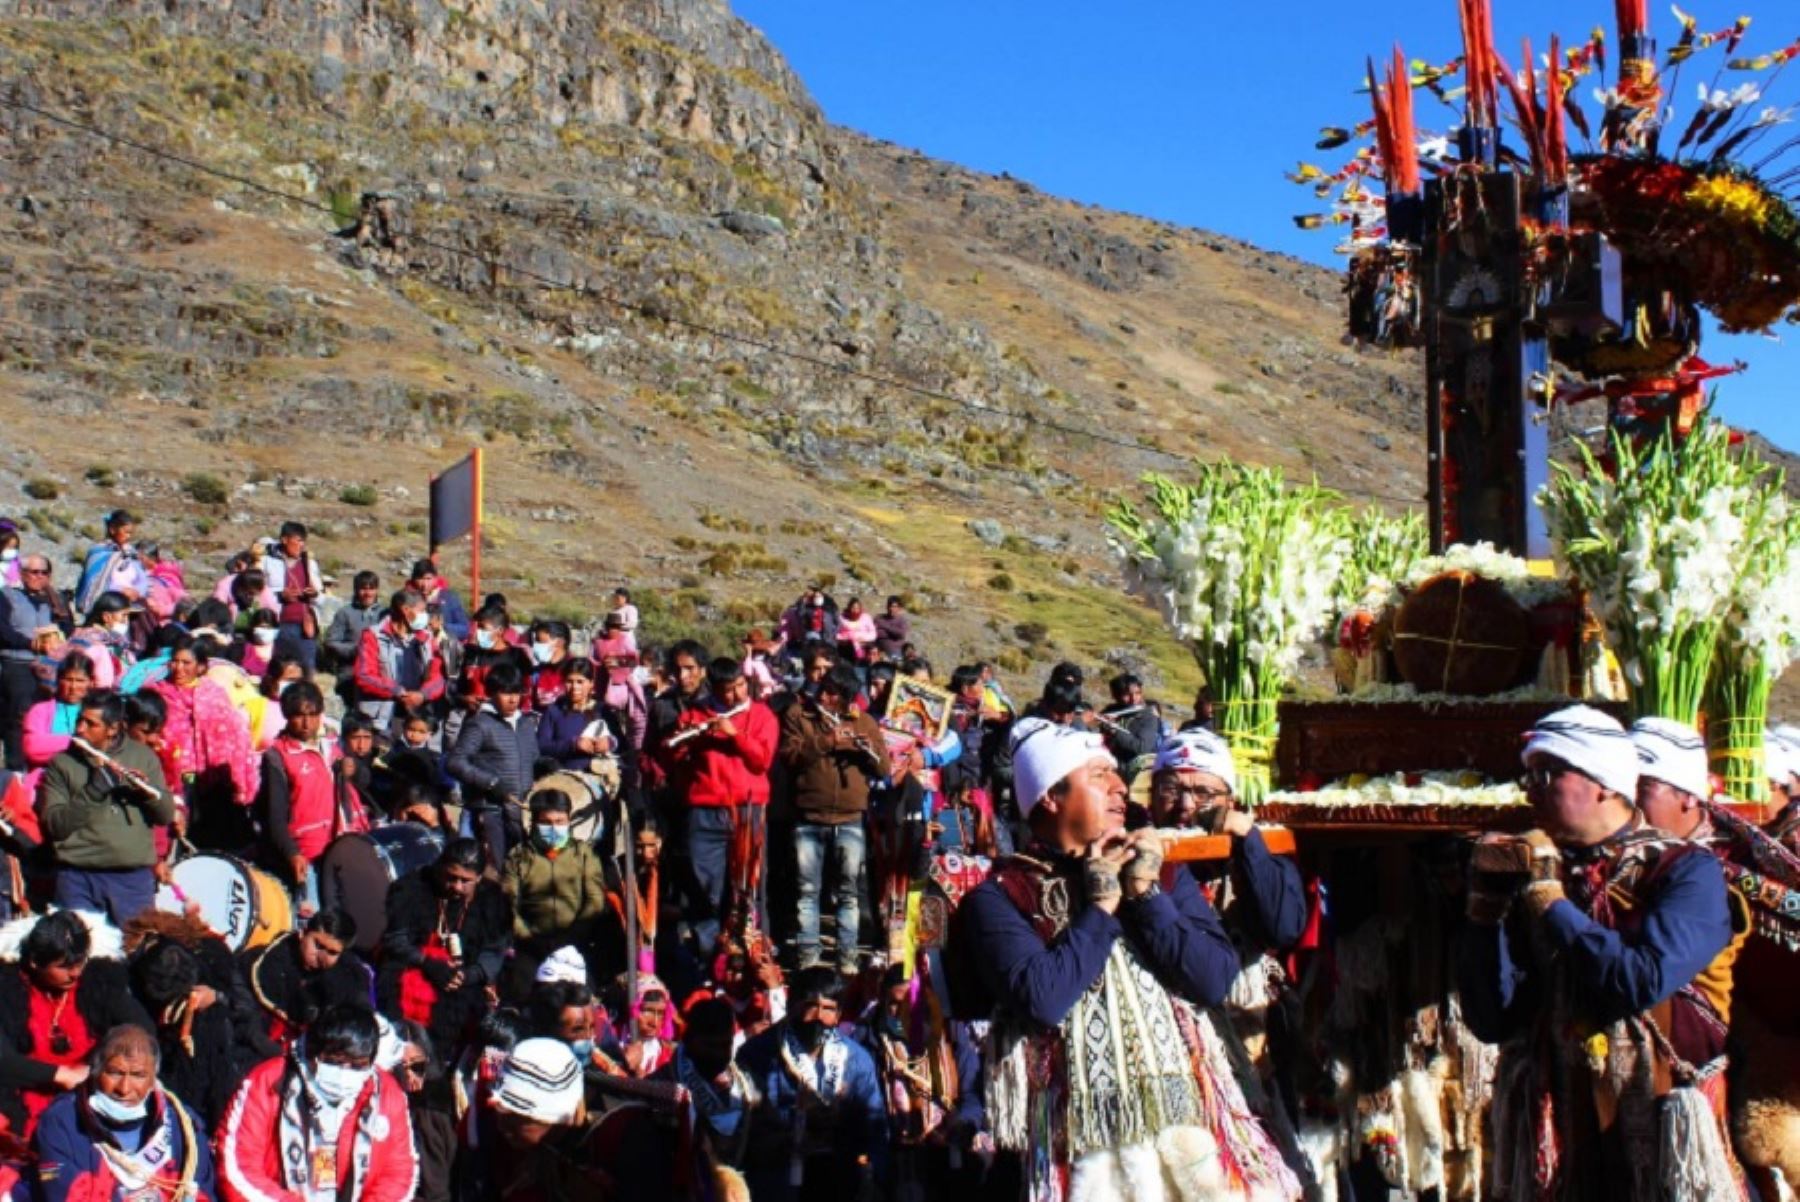 El 27 de noviembre de 2011, la Unesco inscribió a la peregrinación al santuario del Señor de Qoyllur Riti como integrante de la Lista Representativa del Patrimonio Cultural Inmaterial de la Humanidad.